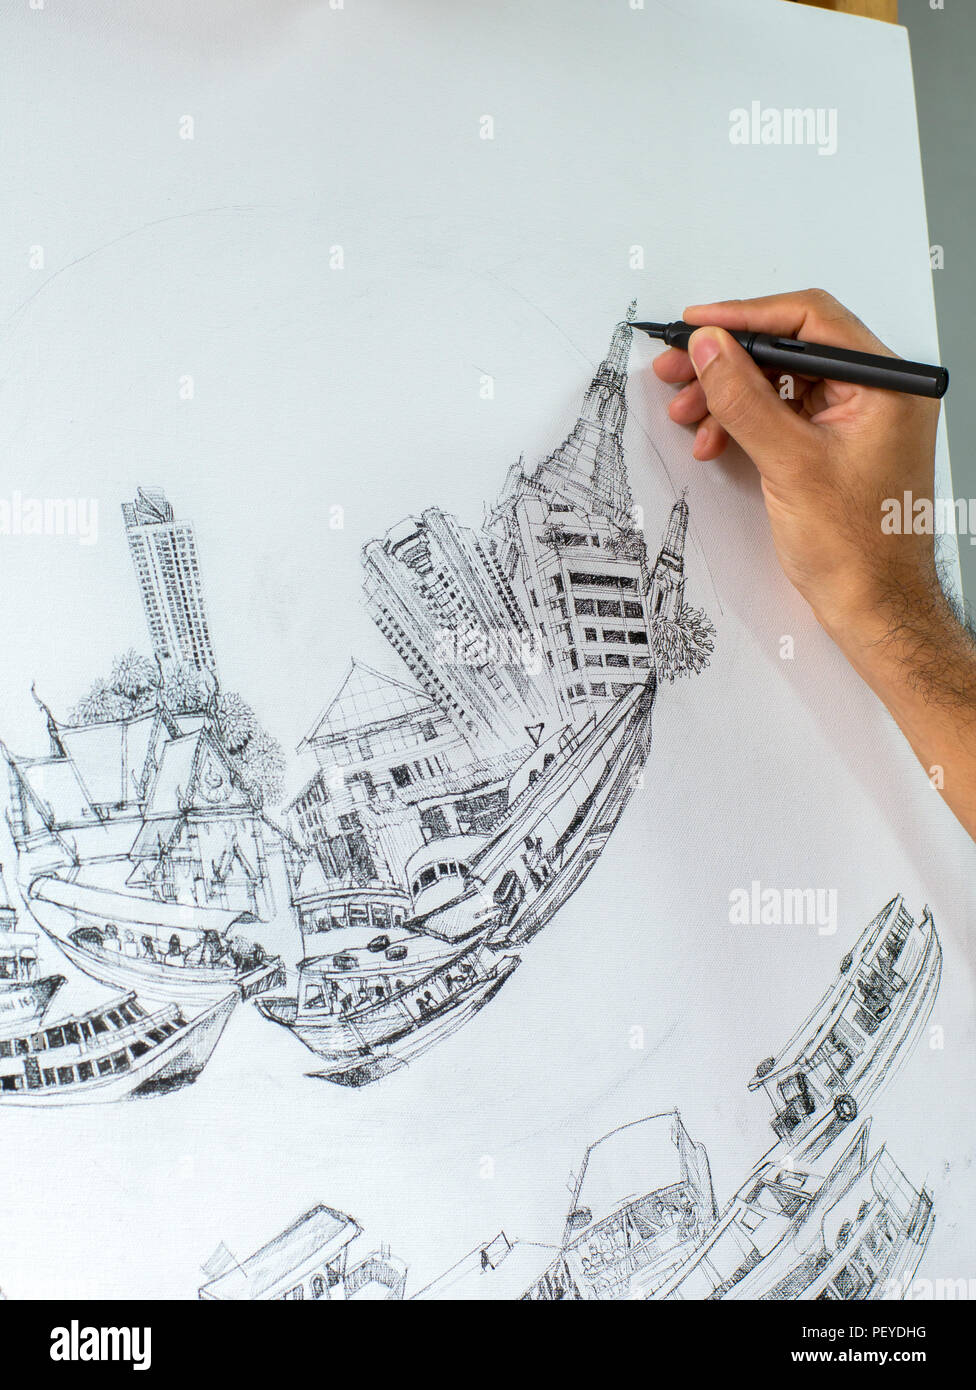 Closeup artist Handzeichnung schwarzen Kugelschreiber auf der weißen  Leinwand auf Staffelei, Konzeption Kunst über den Transport und die Stadt  Stockfotografie - Alamy